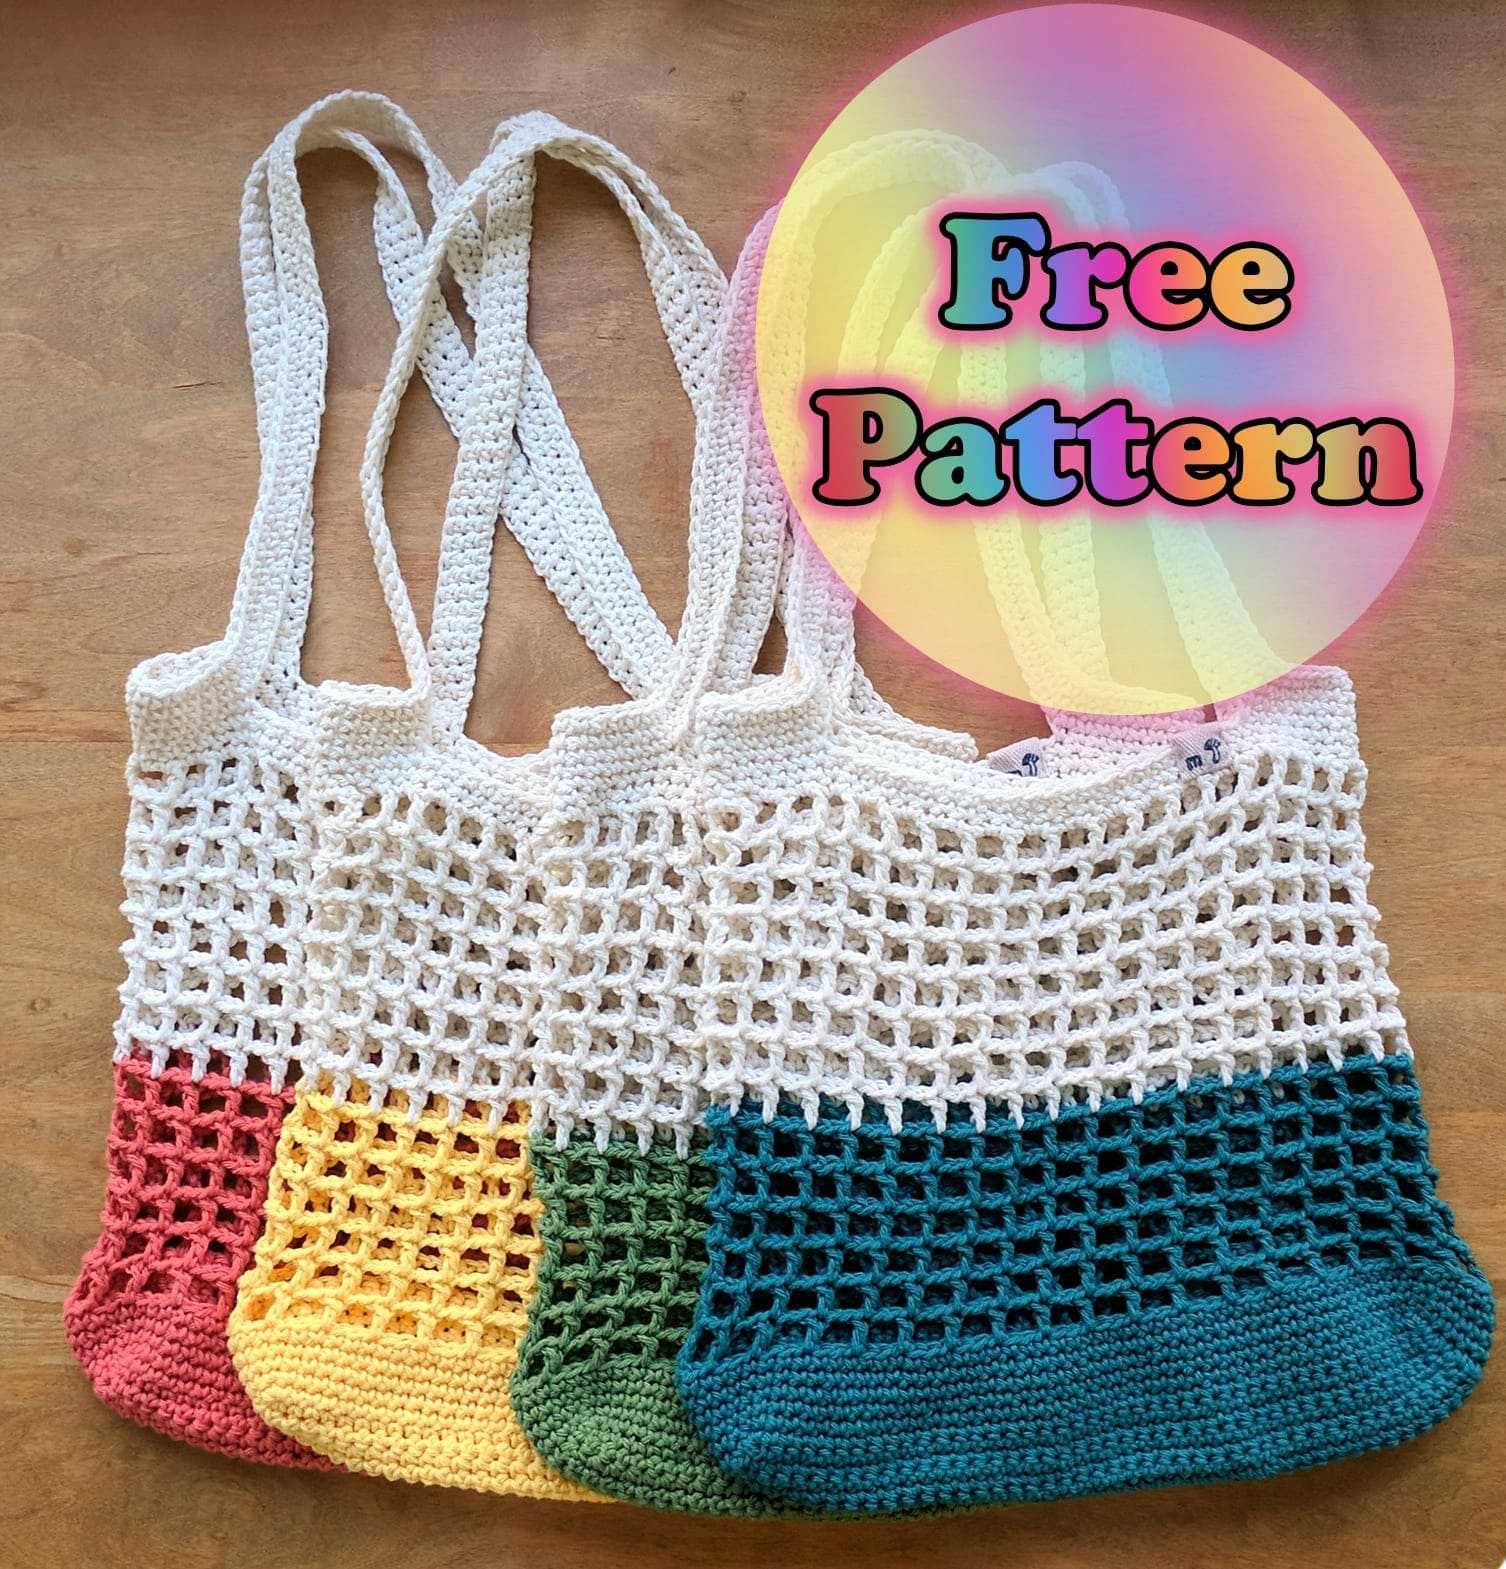 Crochet Market Bag Free Pattern ideas